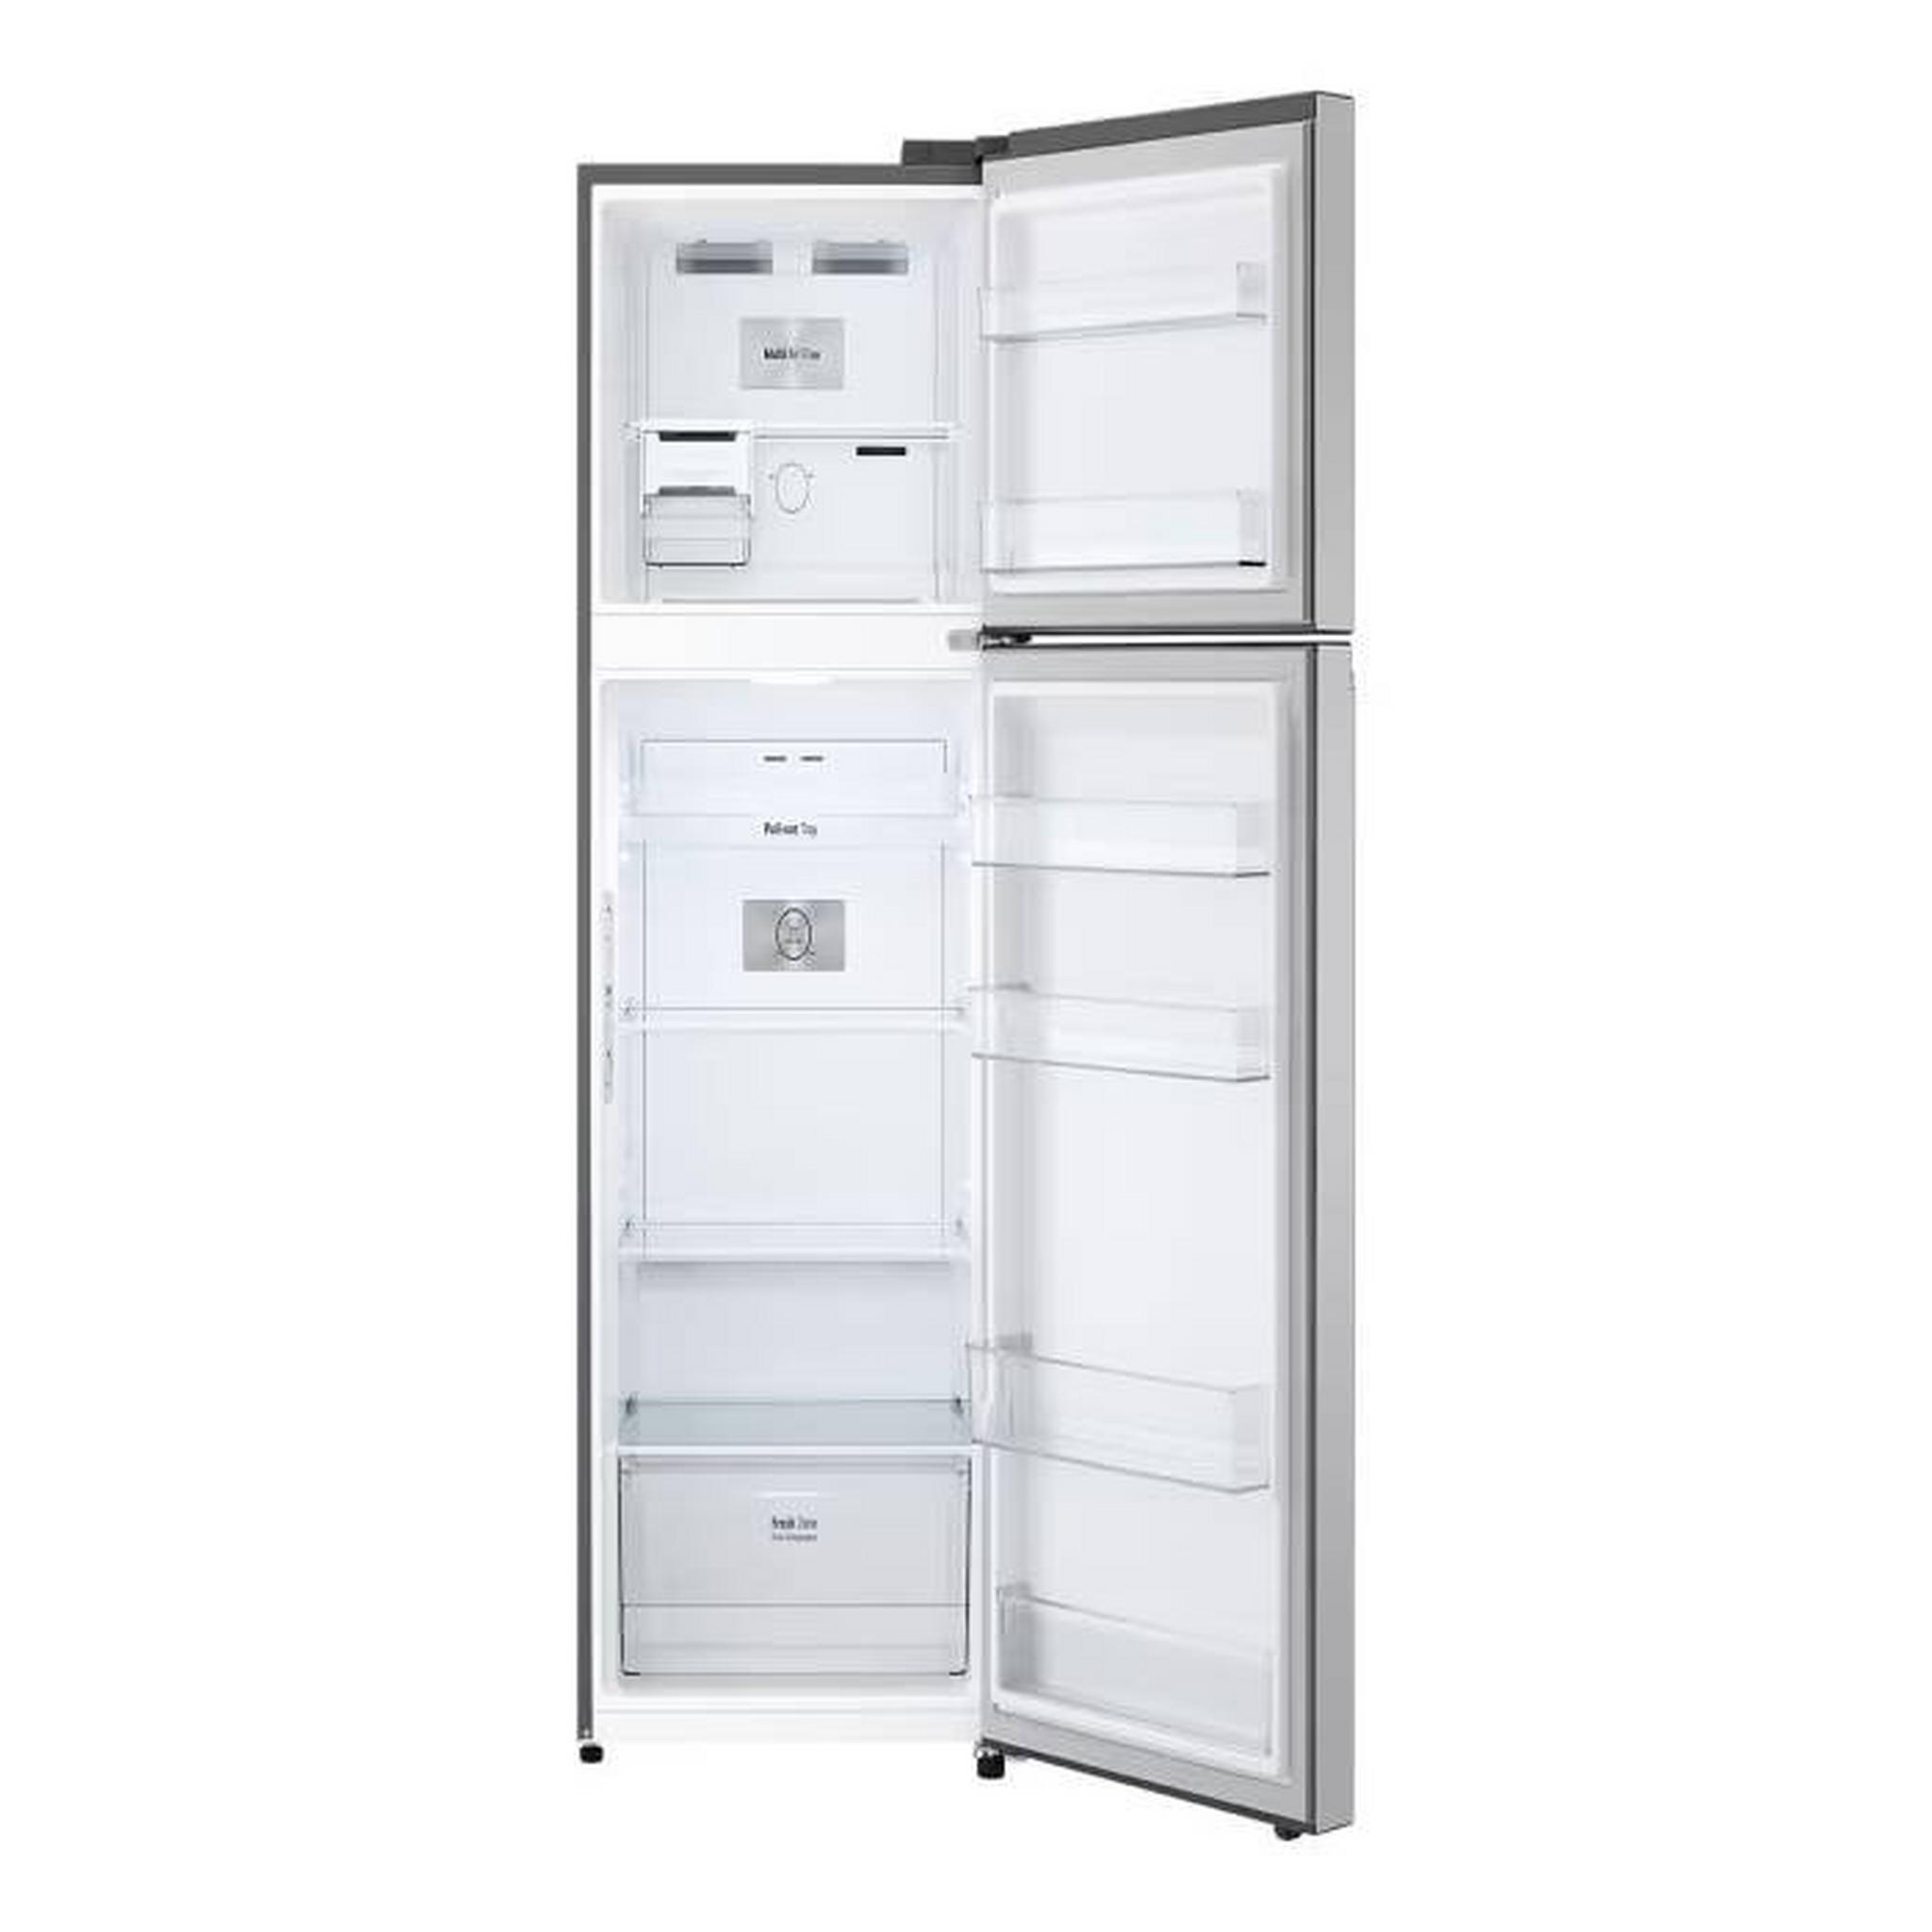 LG Top Mount Refrigerator, 14CFT, 395-Liters, GN-B522PLGB - Sliver